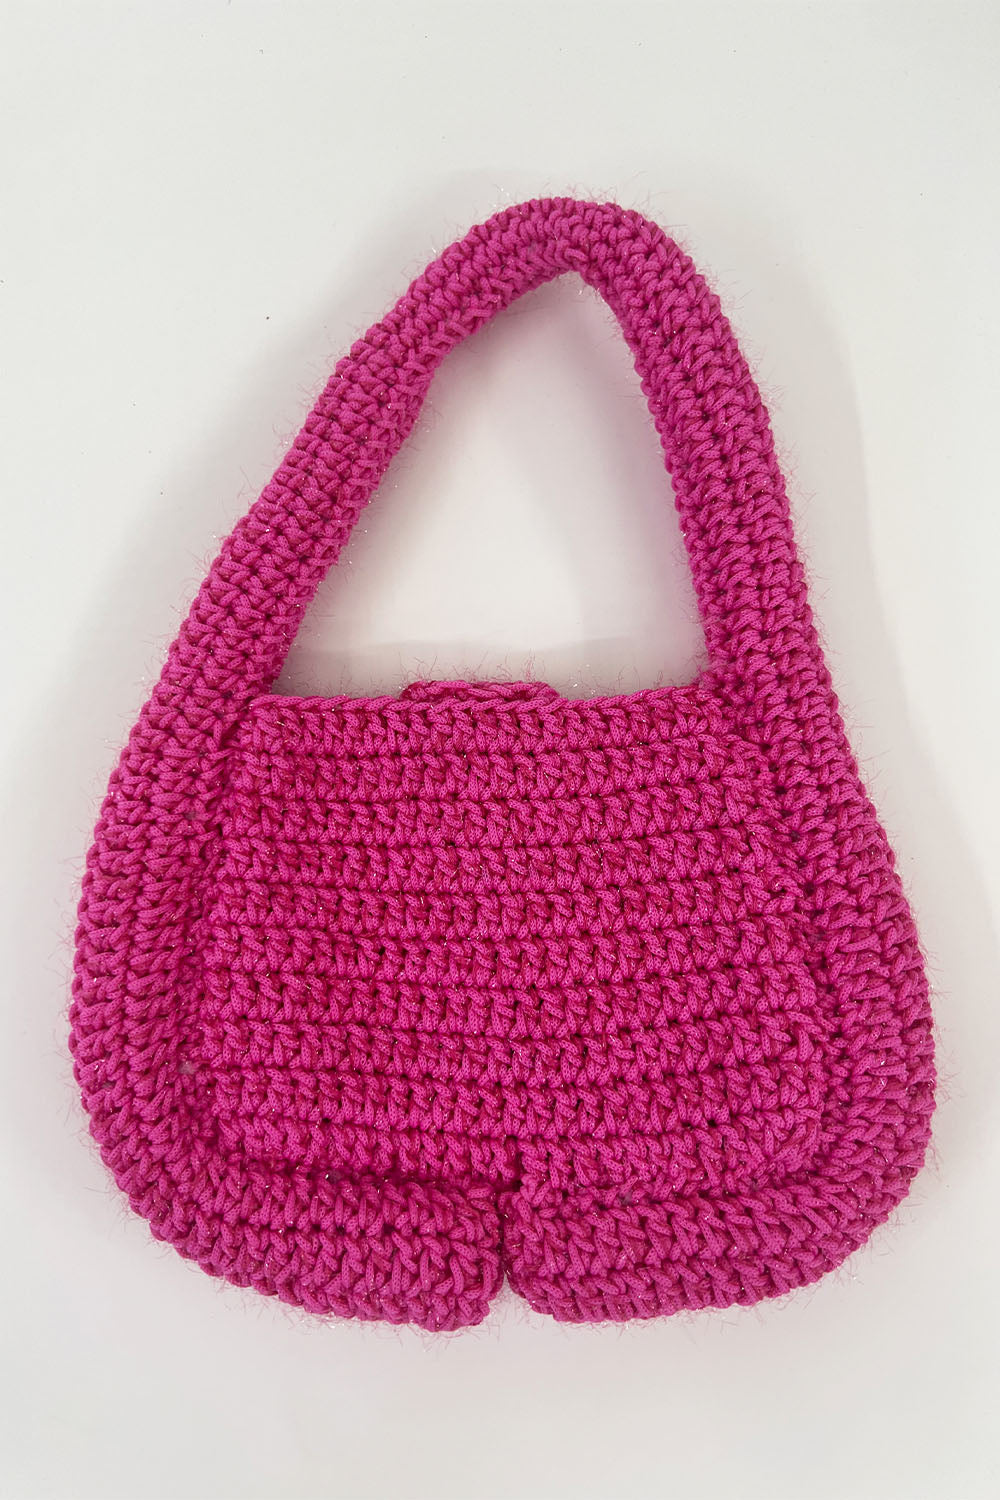 Marco Rambaldi - Crochet Bag: Fuchsia